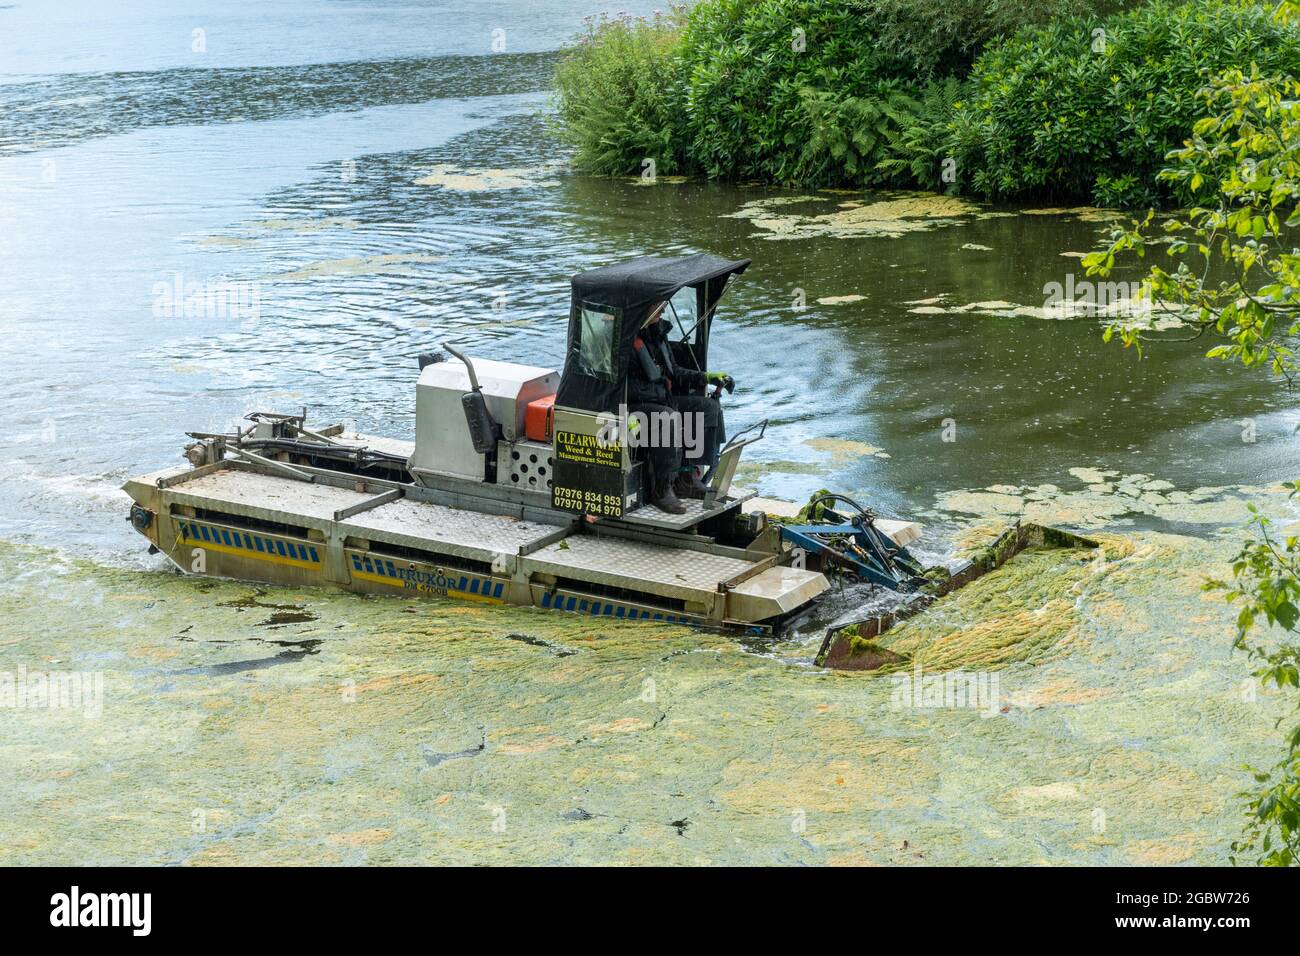 Mann, der an einem Amphibienfahrzeug arbeitet, das als truxor bezeichnet wird und das Teichunkraut oder Algen aus einem See entfernt, Großbritannien Stockfoto